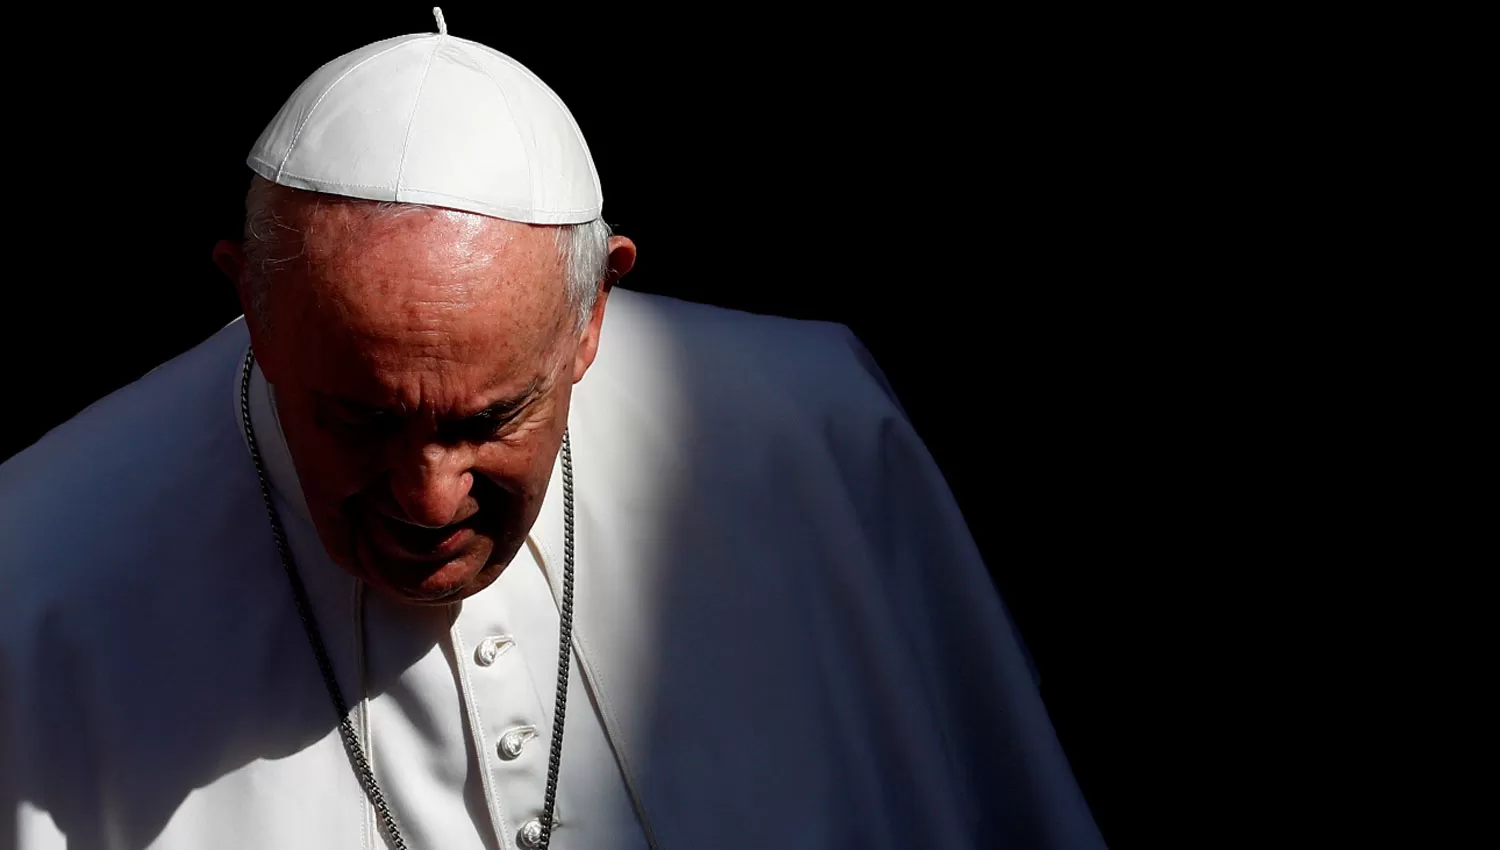 EN RECUPERACIÓN. El Pontífice Jorge Bergoglio permanecerá una semana internado hasta su recuperación plena.